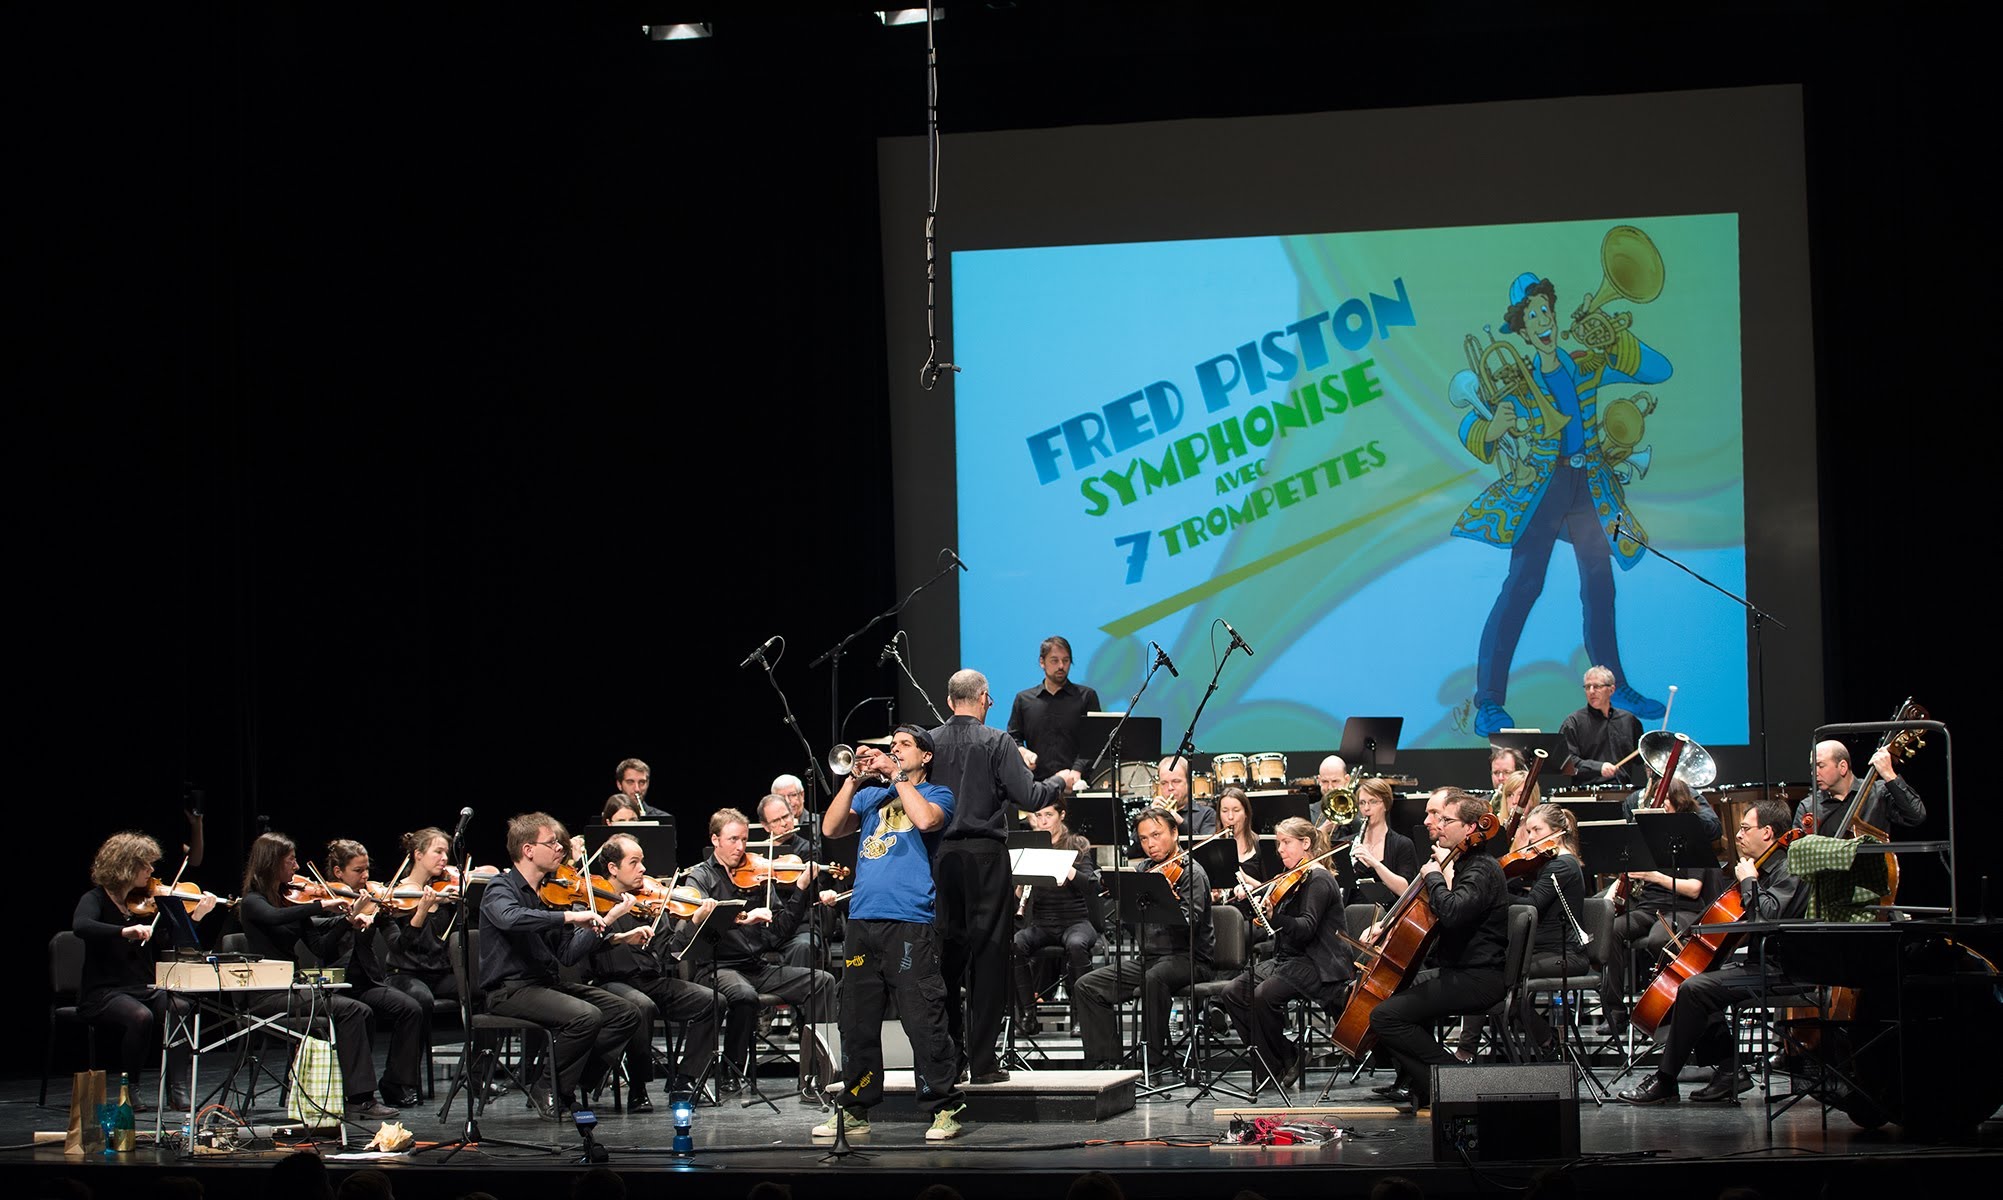   Fred Piston  avec l'Orchestre symphonique de l'École de musique de l'UdeS  (10 décembre 2017) 